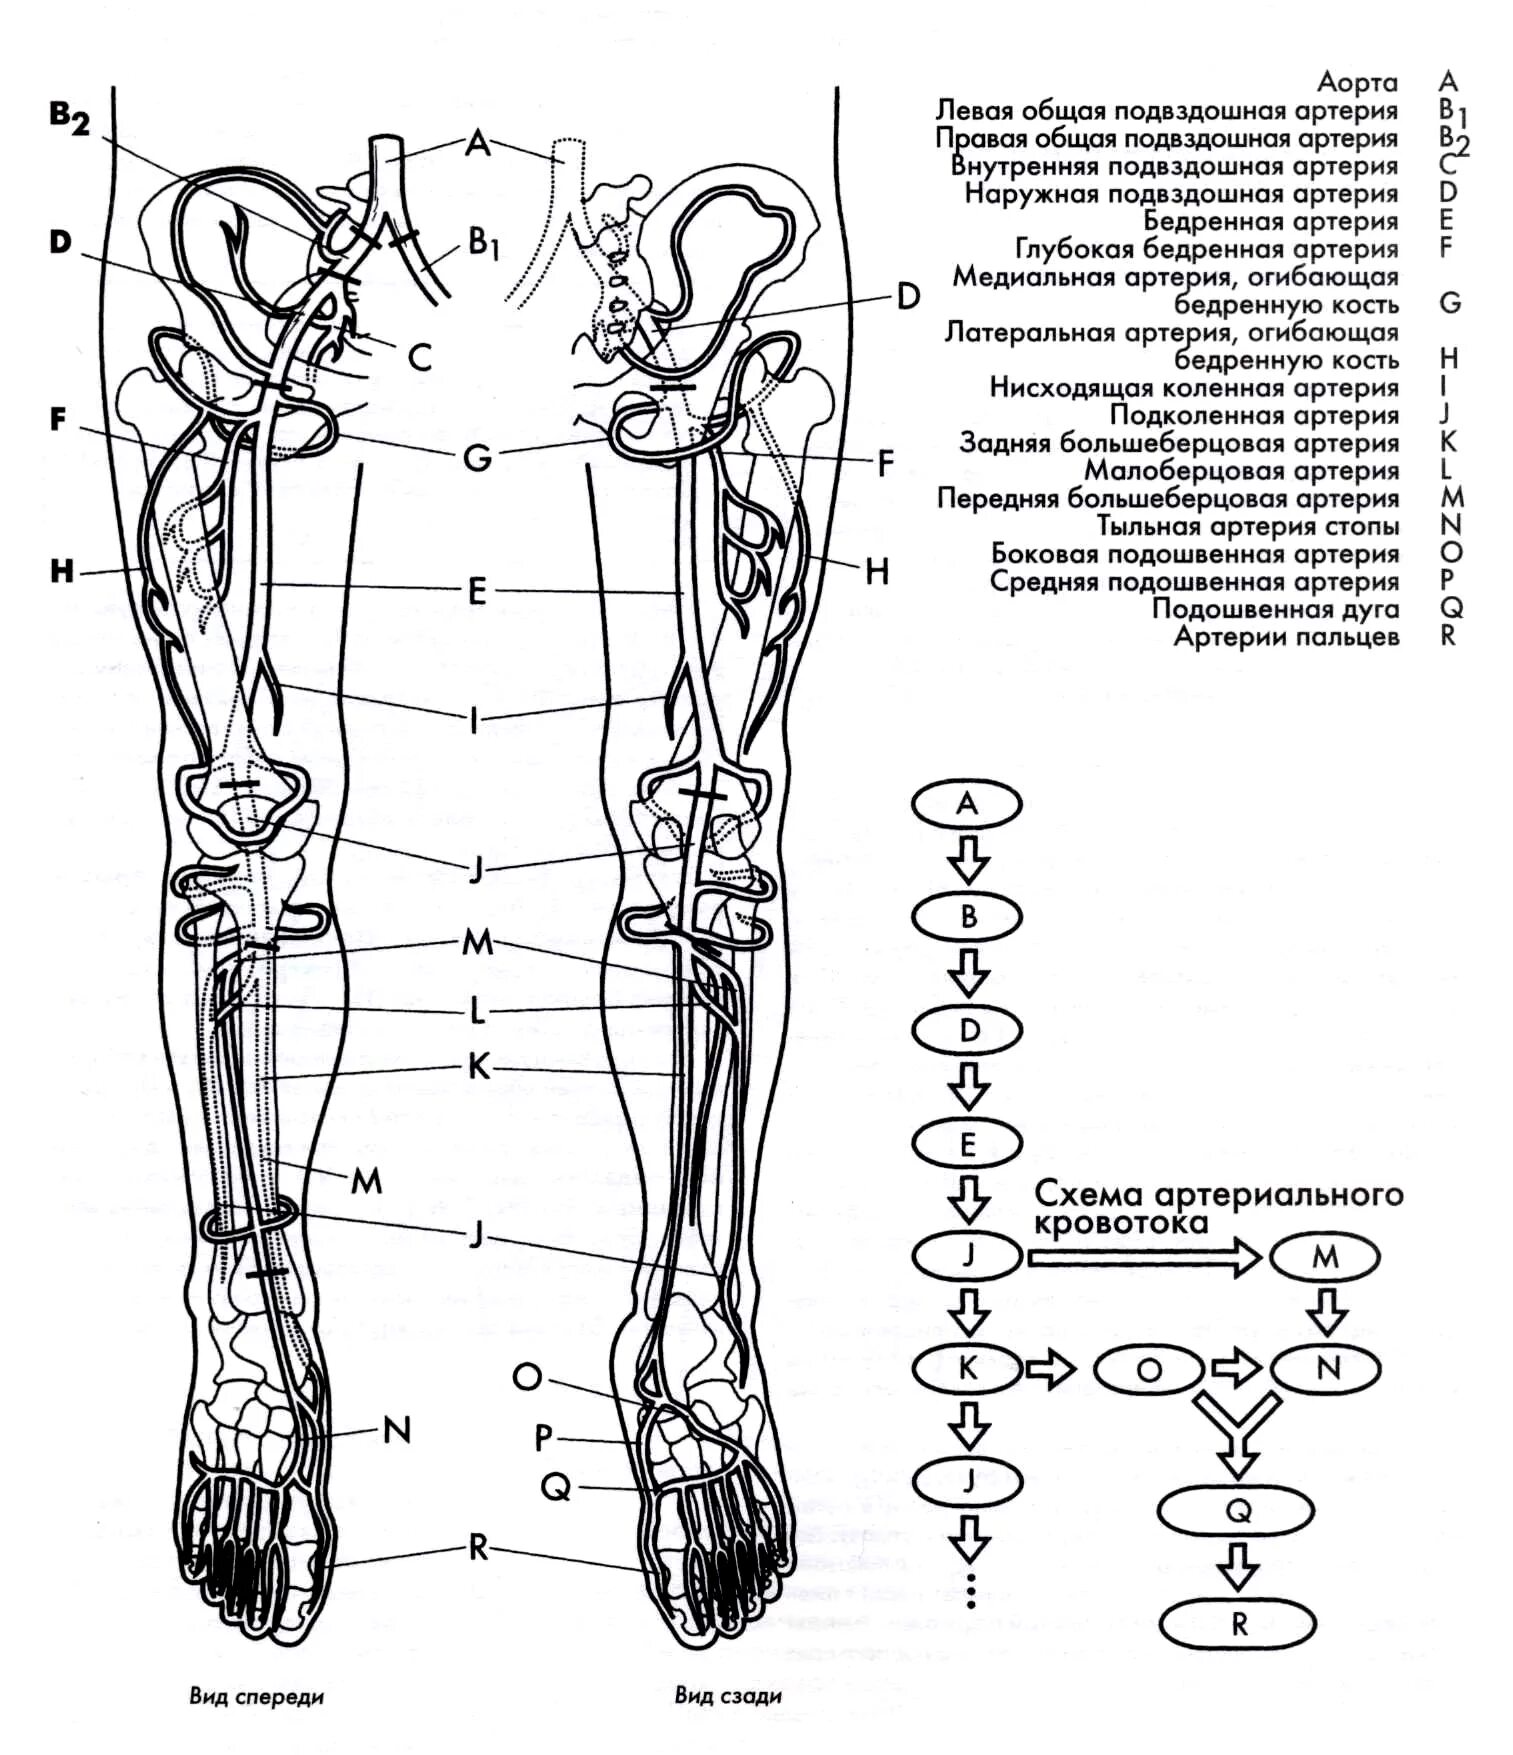 Артериальные сосуды нижних конечностей. Схема венозного кровотока нижней конечности. Схема кровоснабжения конечностей. Схема артериального кровотока нижней конечности. Система кровообращения человека схема нижних конечностей.